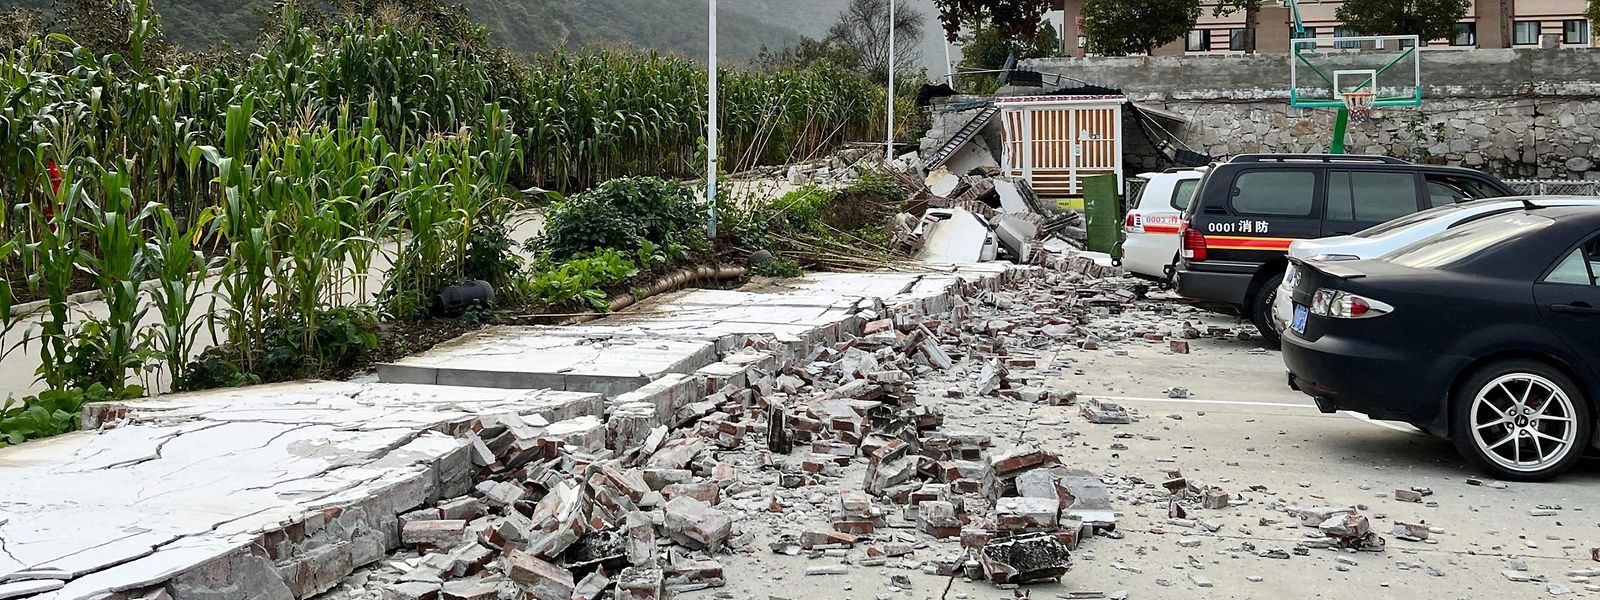 A destruição causada pelo terramoto em Hailuogou, no sudoeste da província chinesa de Sichuan, a 5 de setembro